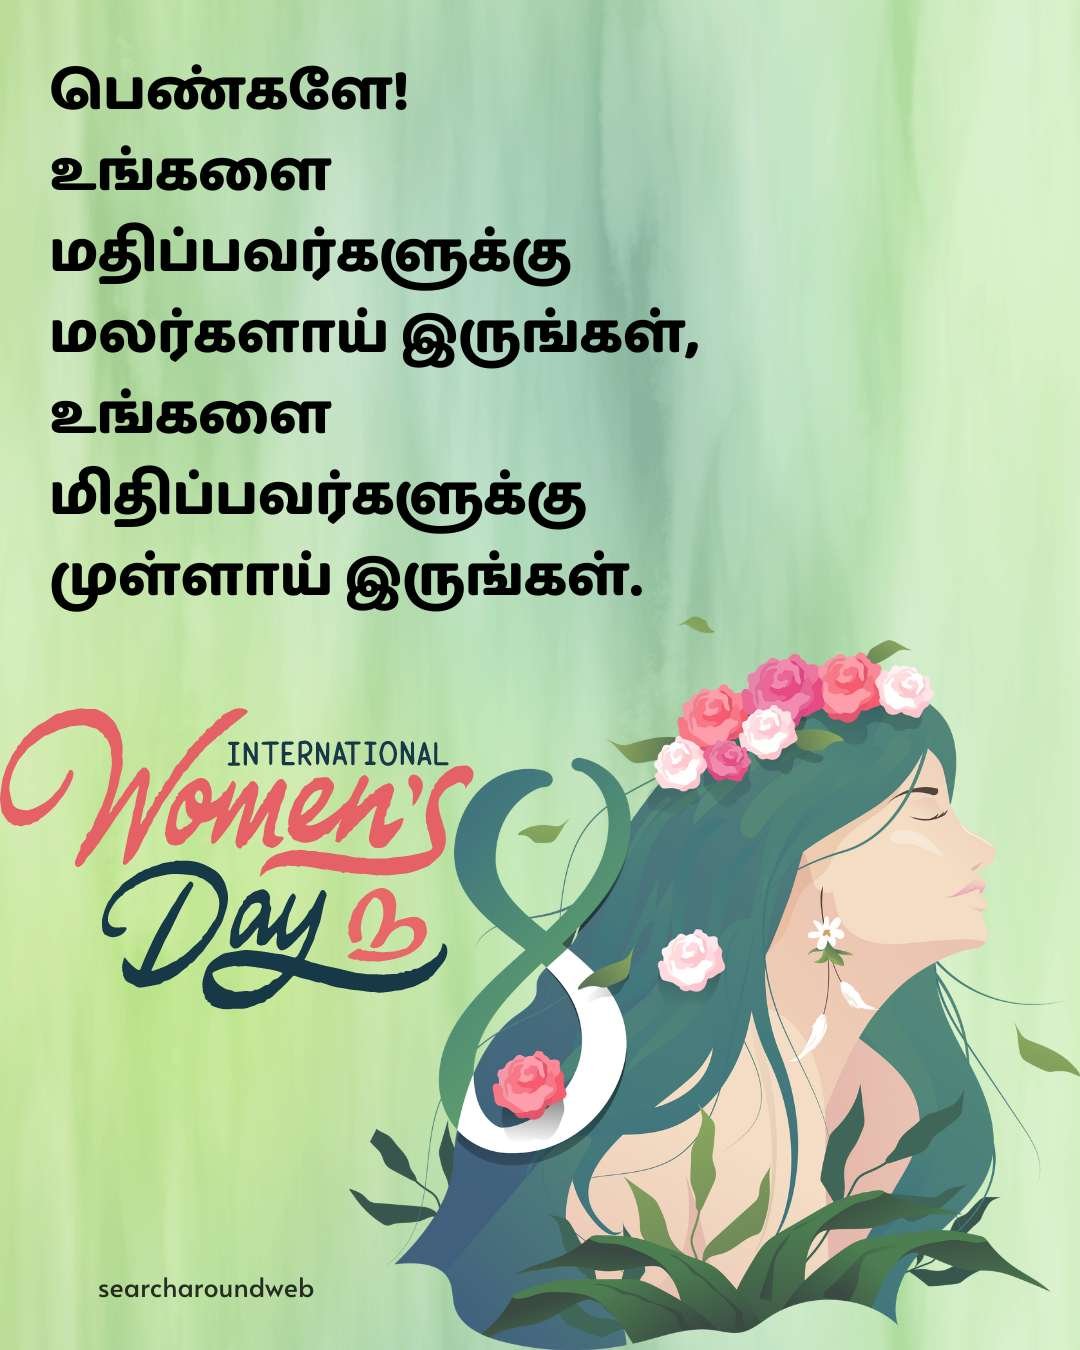 வீர மங்கையர்களுக்கு மகளிர் தின வாழ்த்துக்கள் | Happy Women's Day Wishes in Tamil 